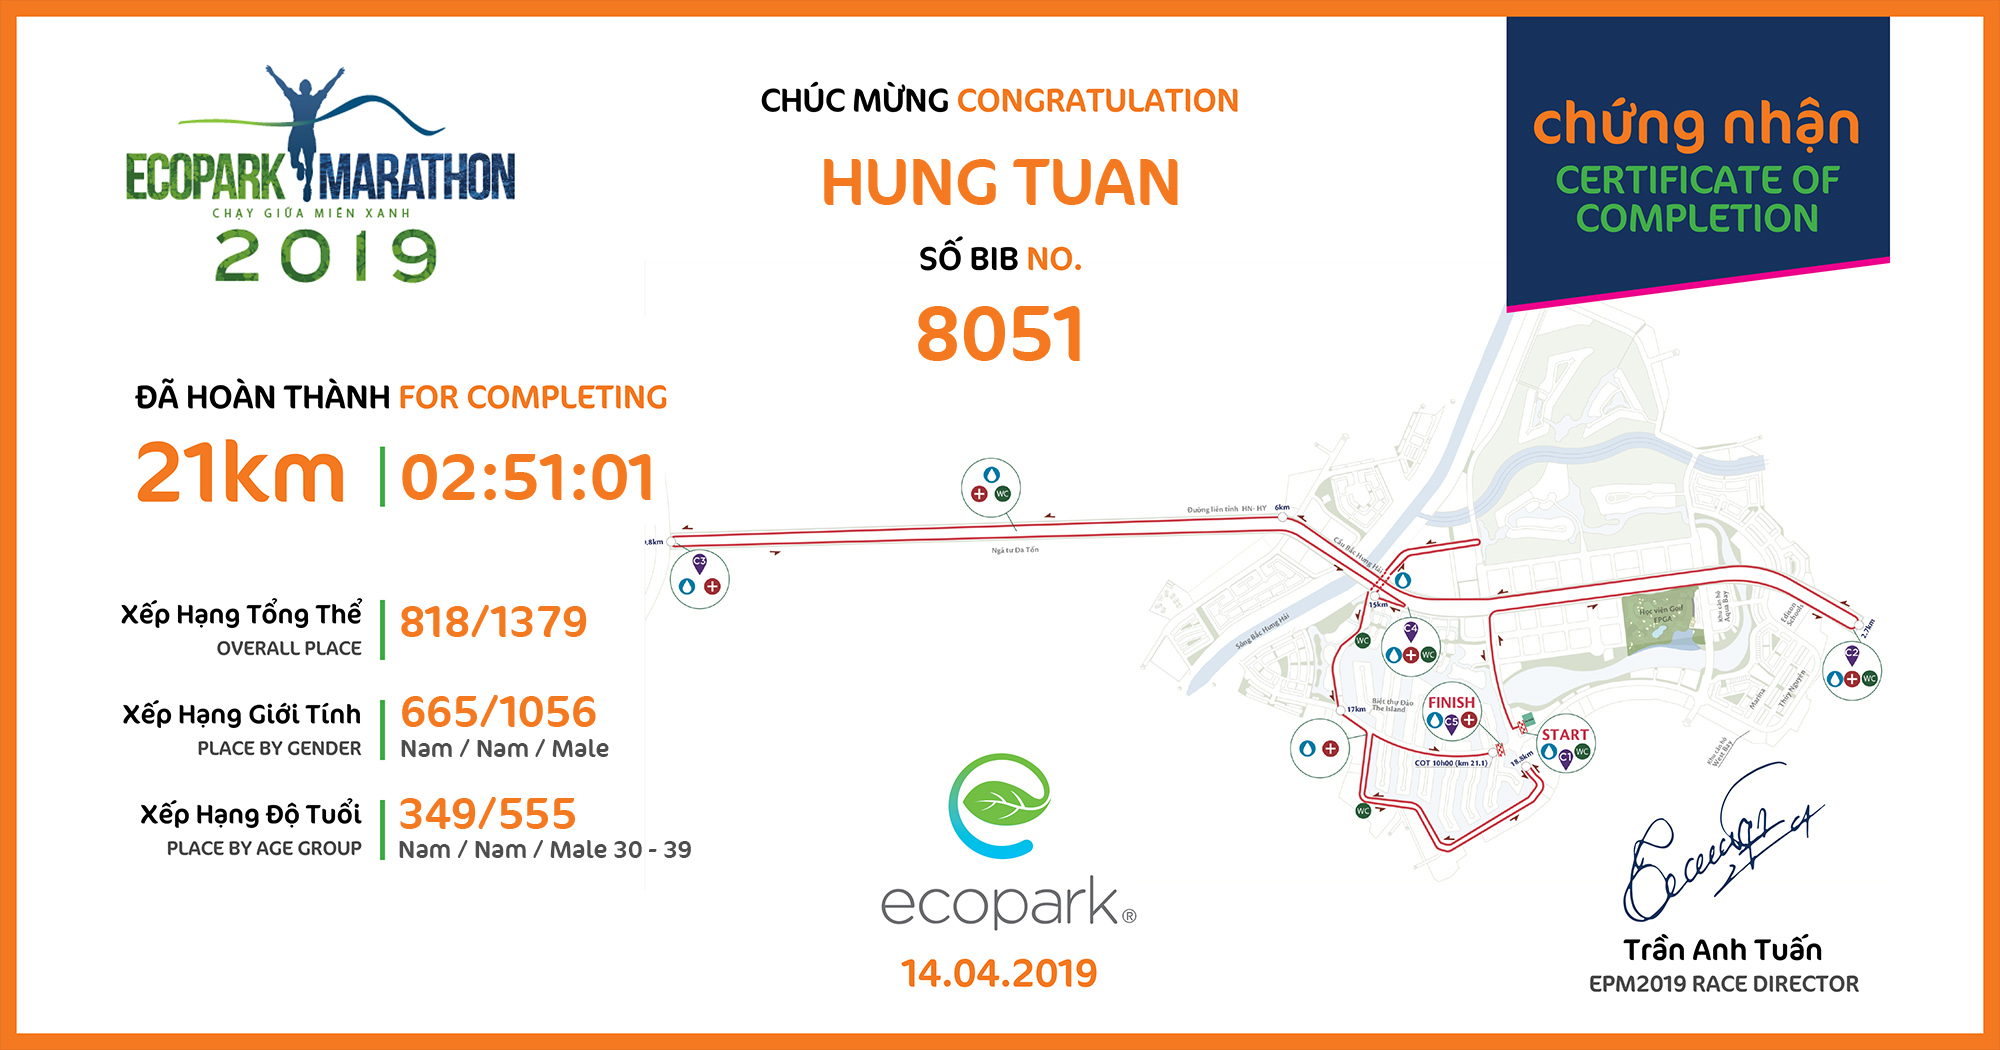 8051 - Hung Tuan